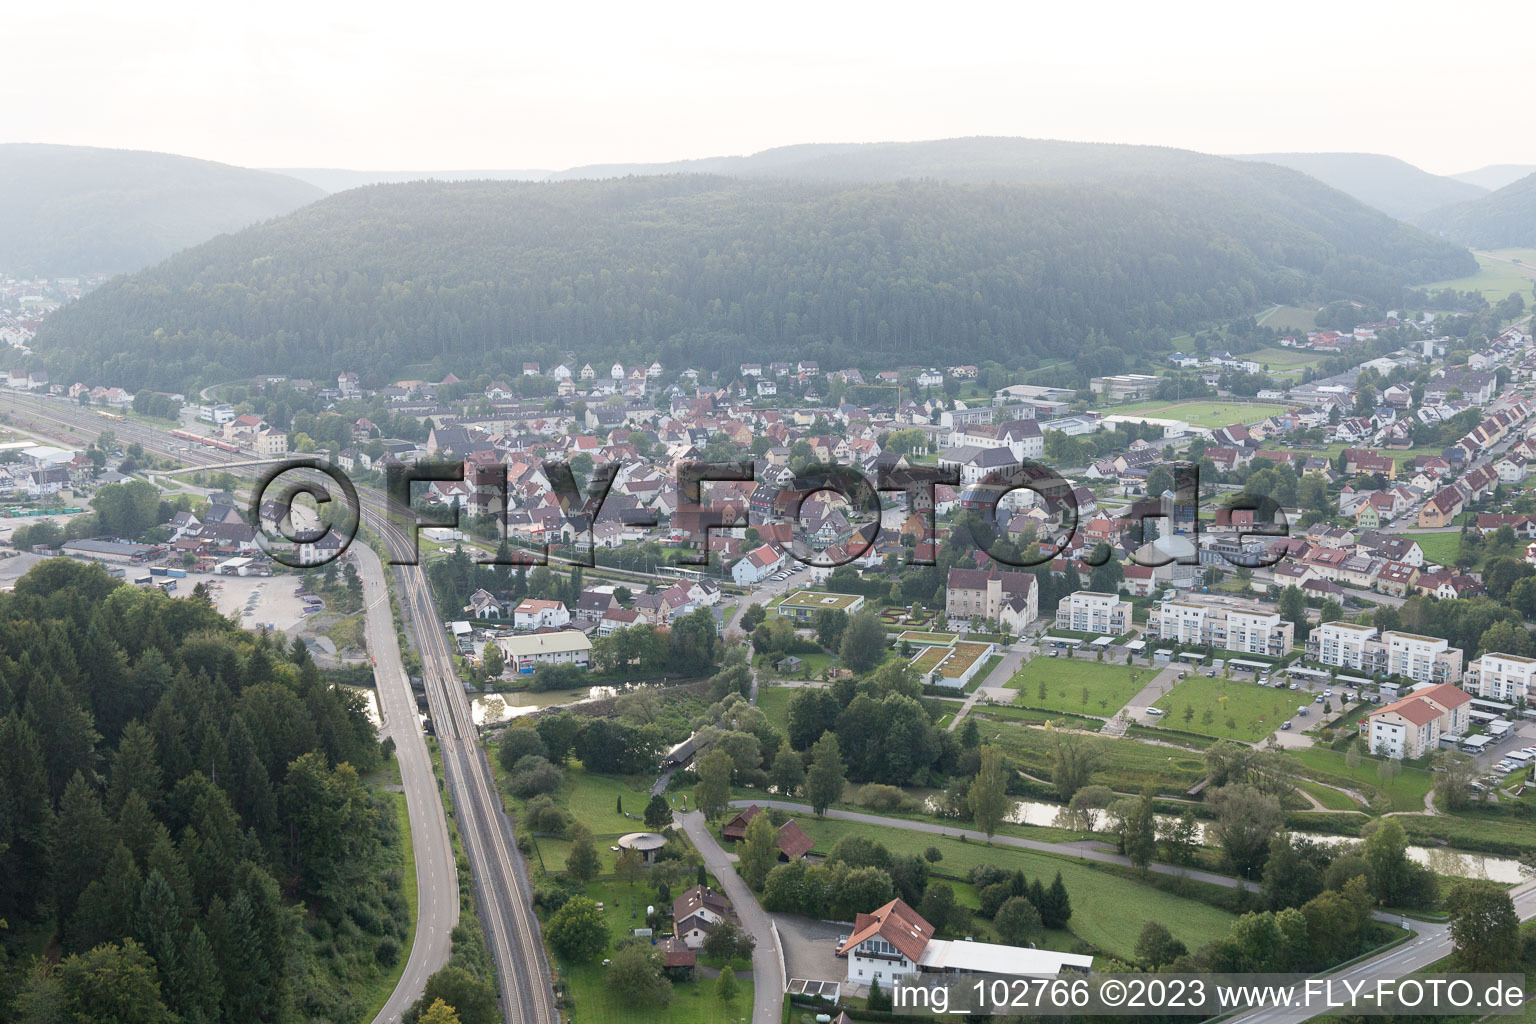 Immendingen dans le département Bade-Wurtemberg, Allemagne vue d'en haut